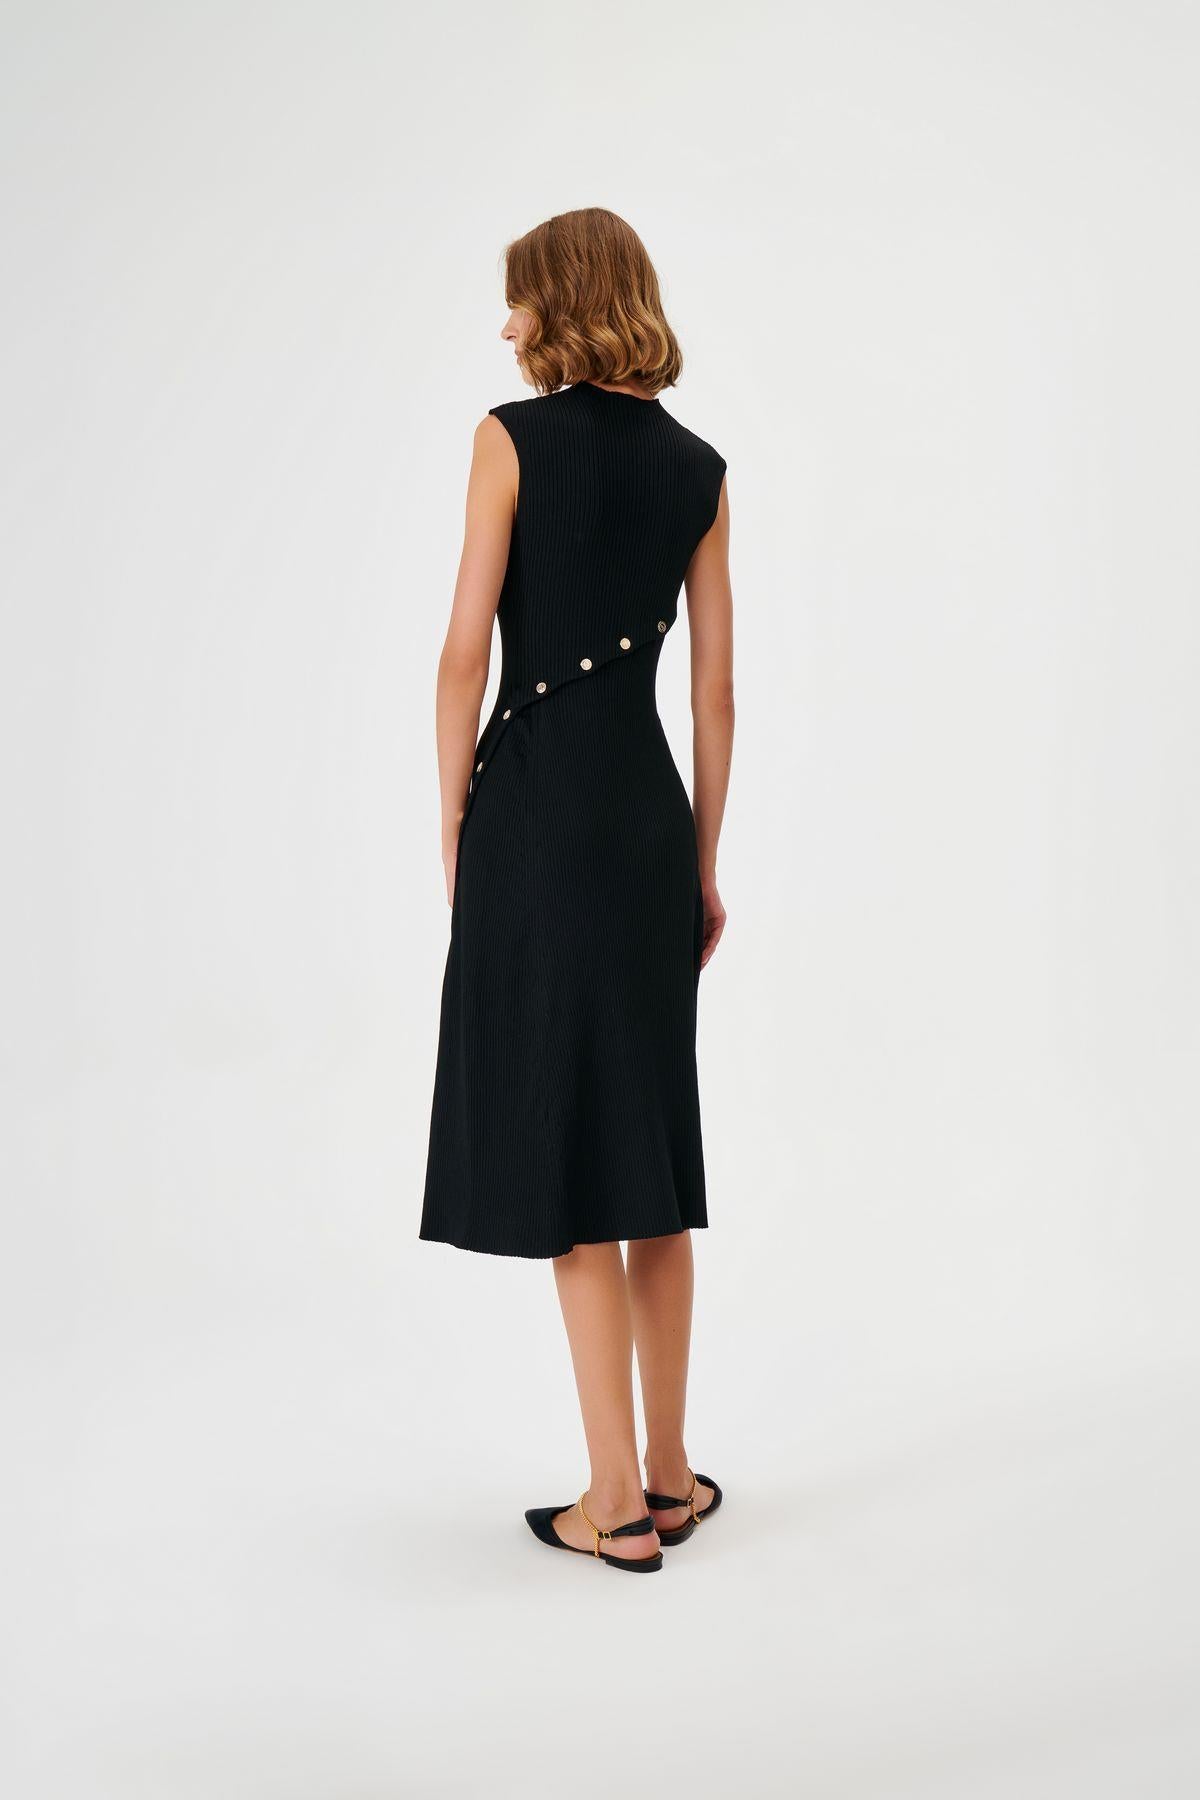 Button Detailed Sleeveless Black Knitwear Dress